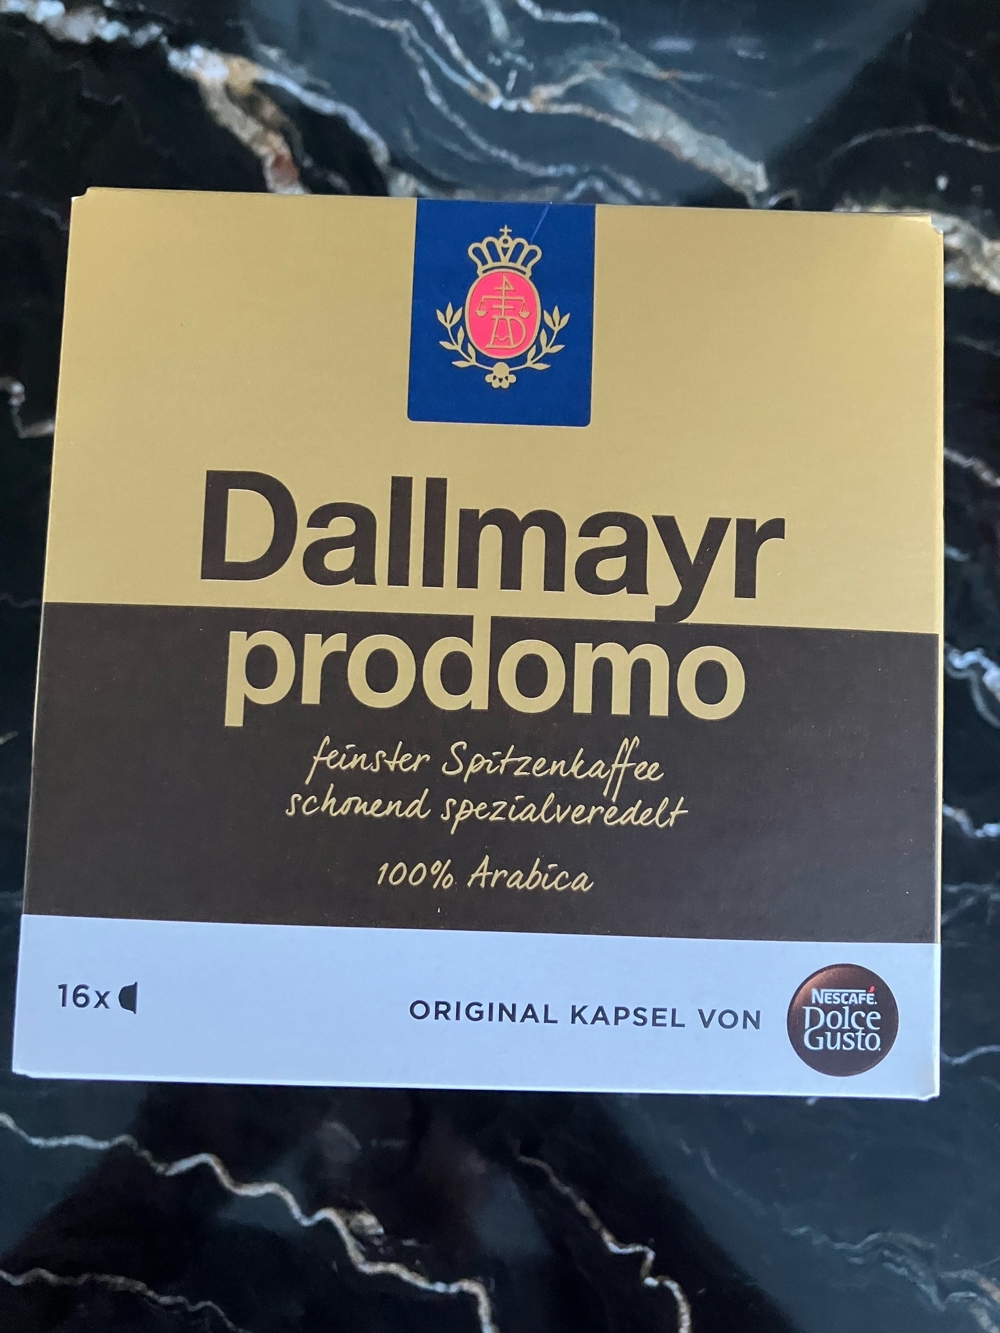 Dallmayr prodomo Kaffeekapseln